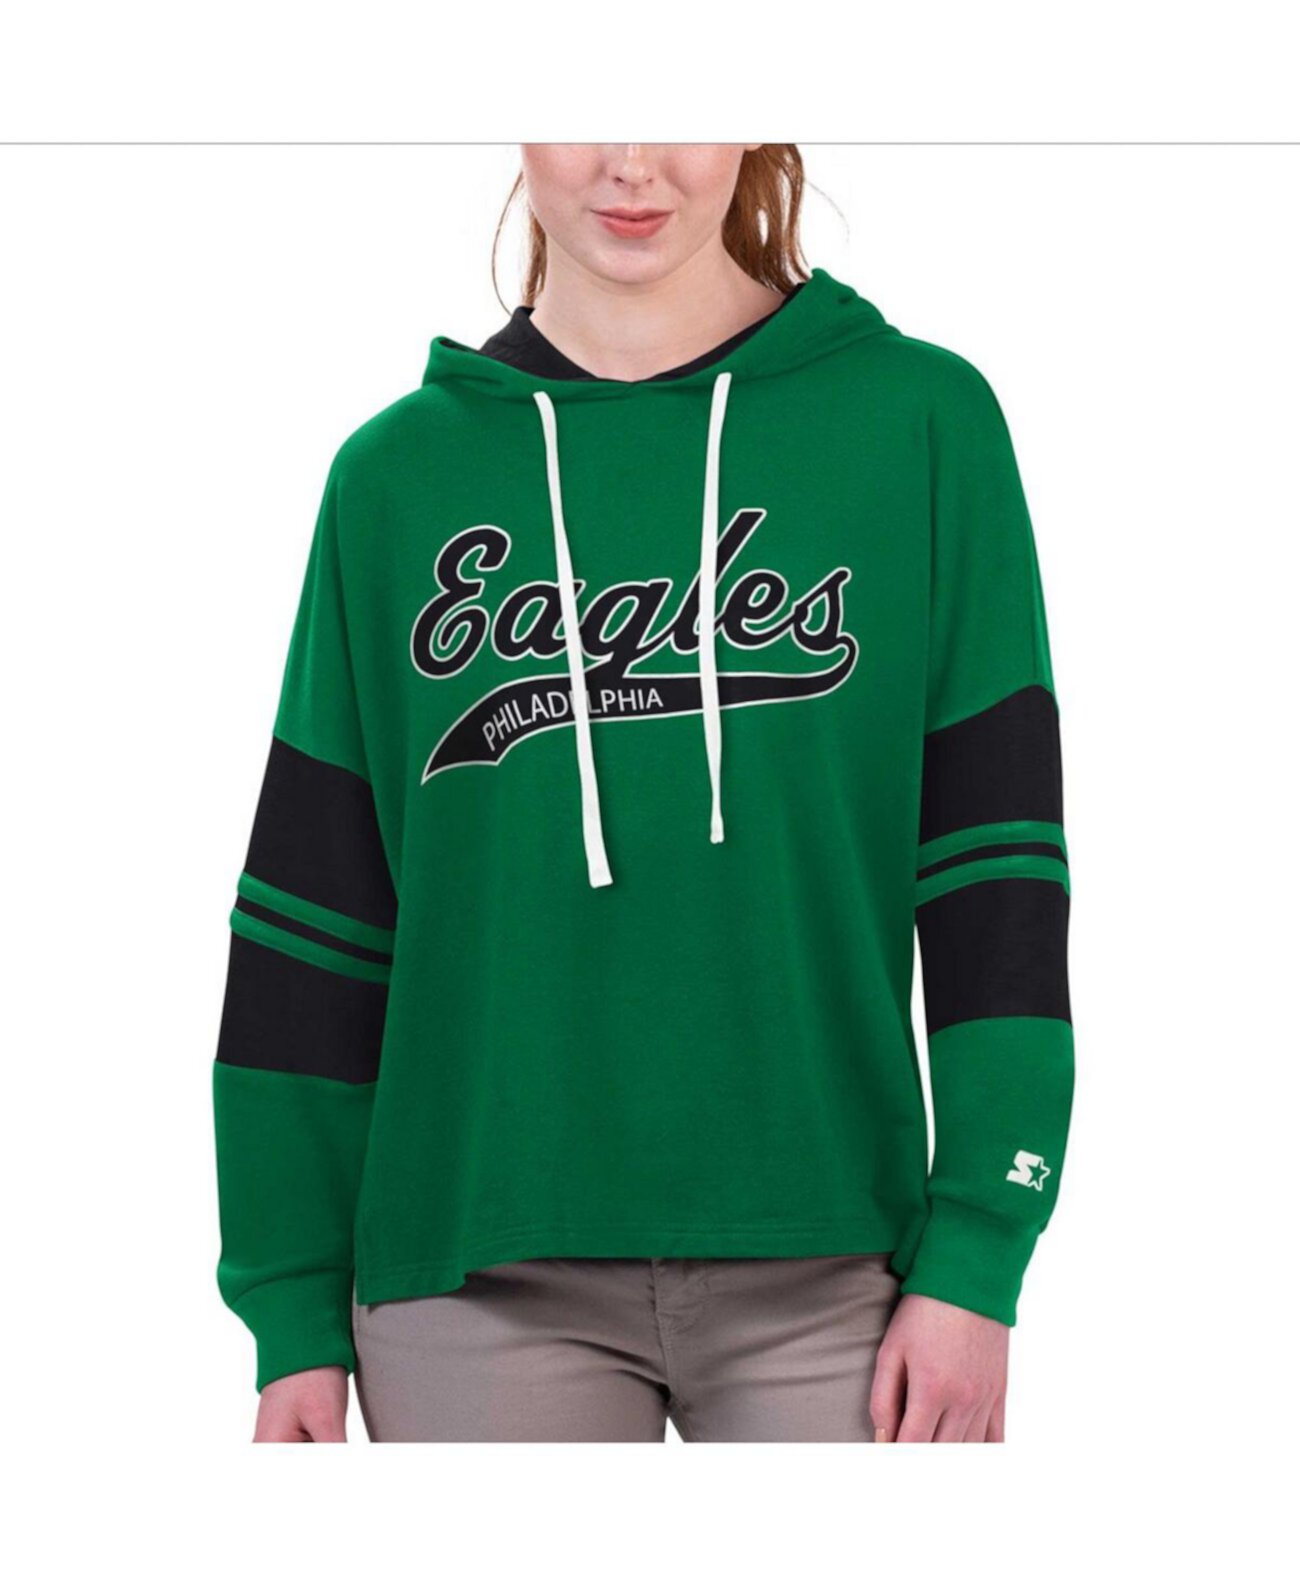 Женская футболка Kelly Green Philadelphia Eagles Bump and Run с капюшоном и длинными рукавами Starter